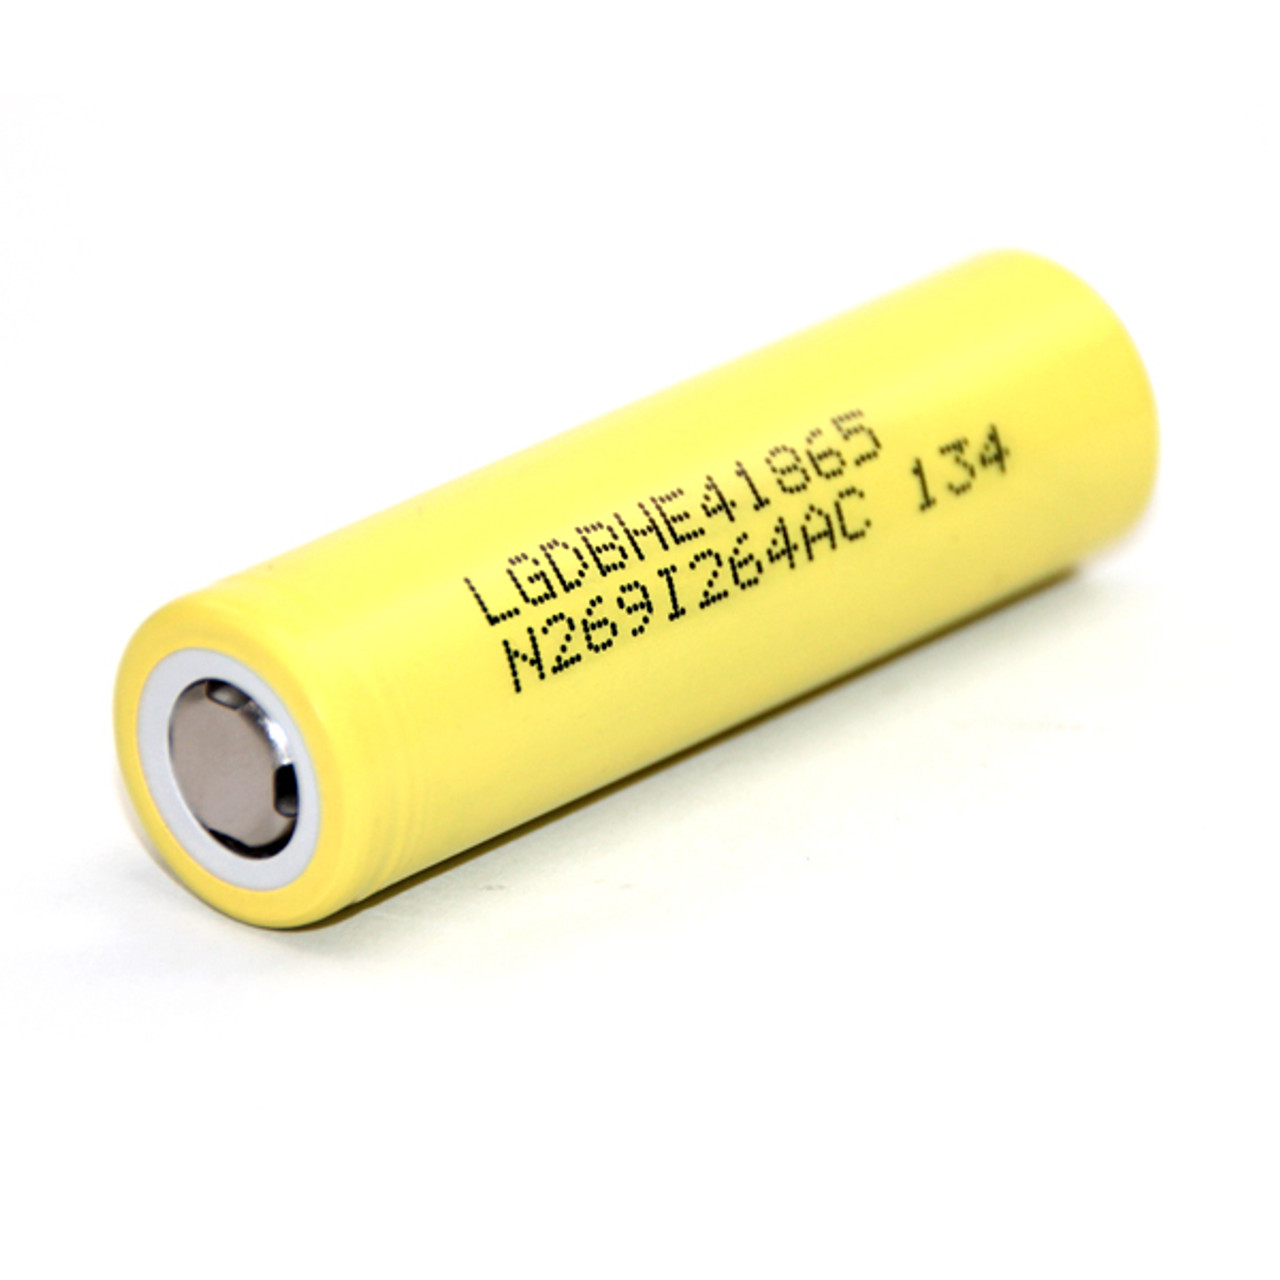 LG HE4 2500mAh High Drain Lithium Battery | VapeKing